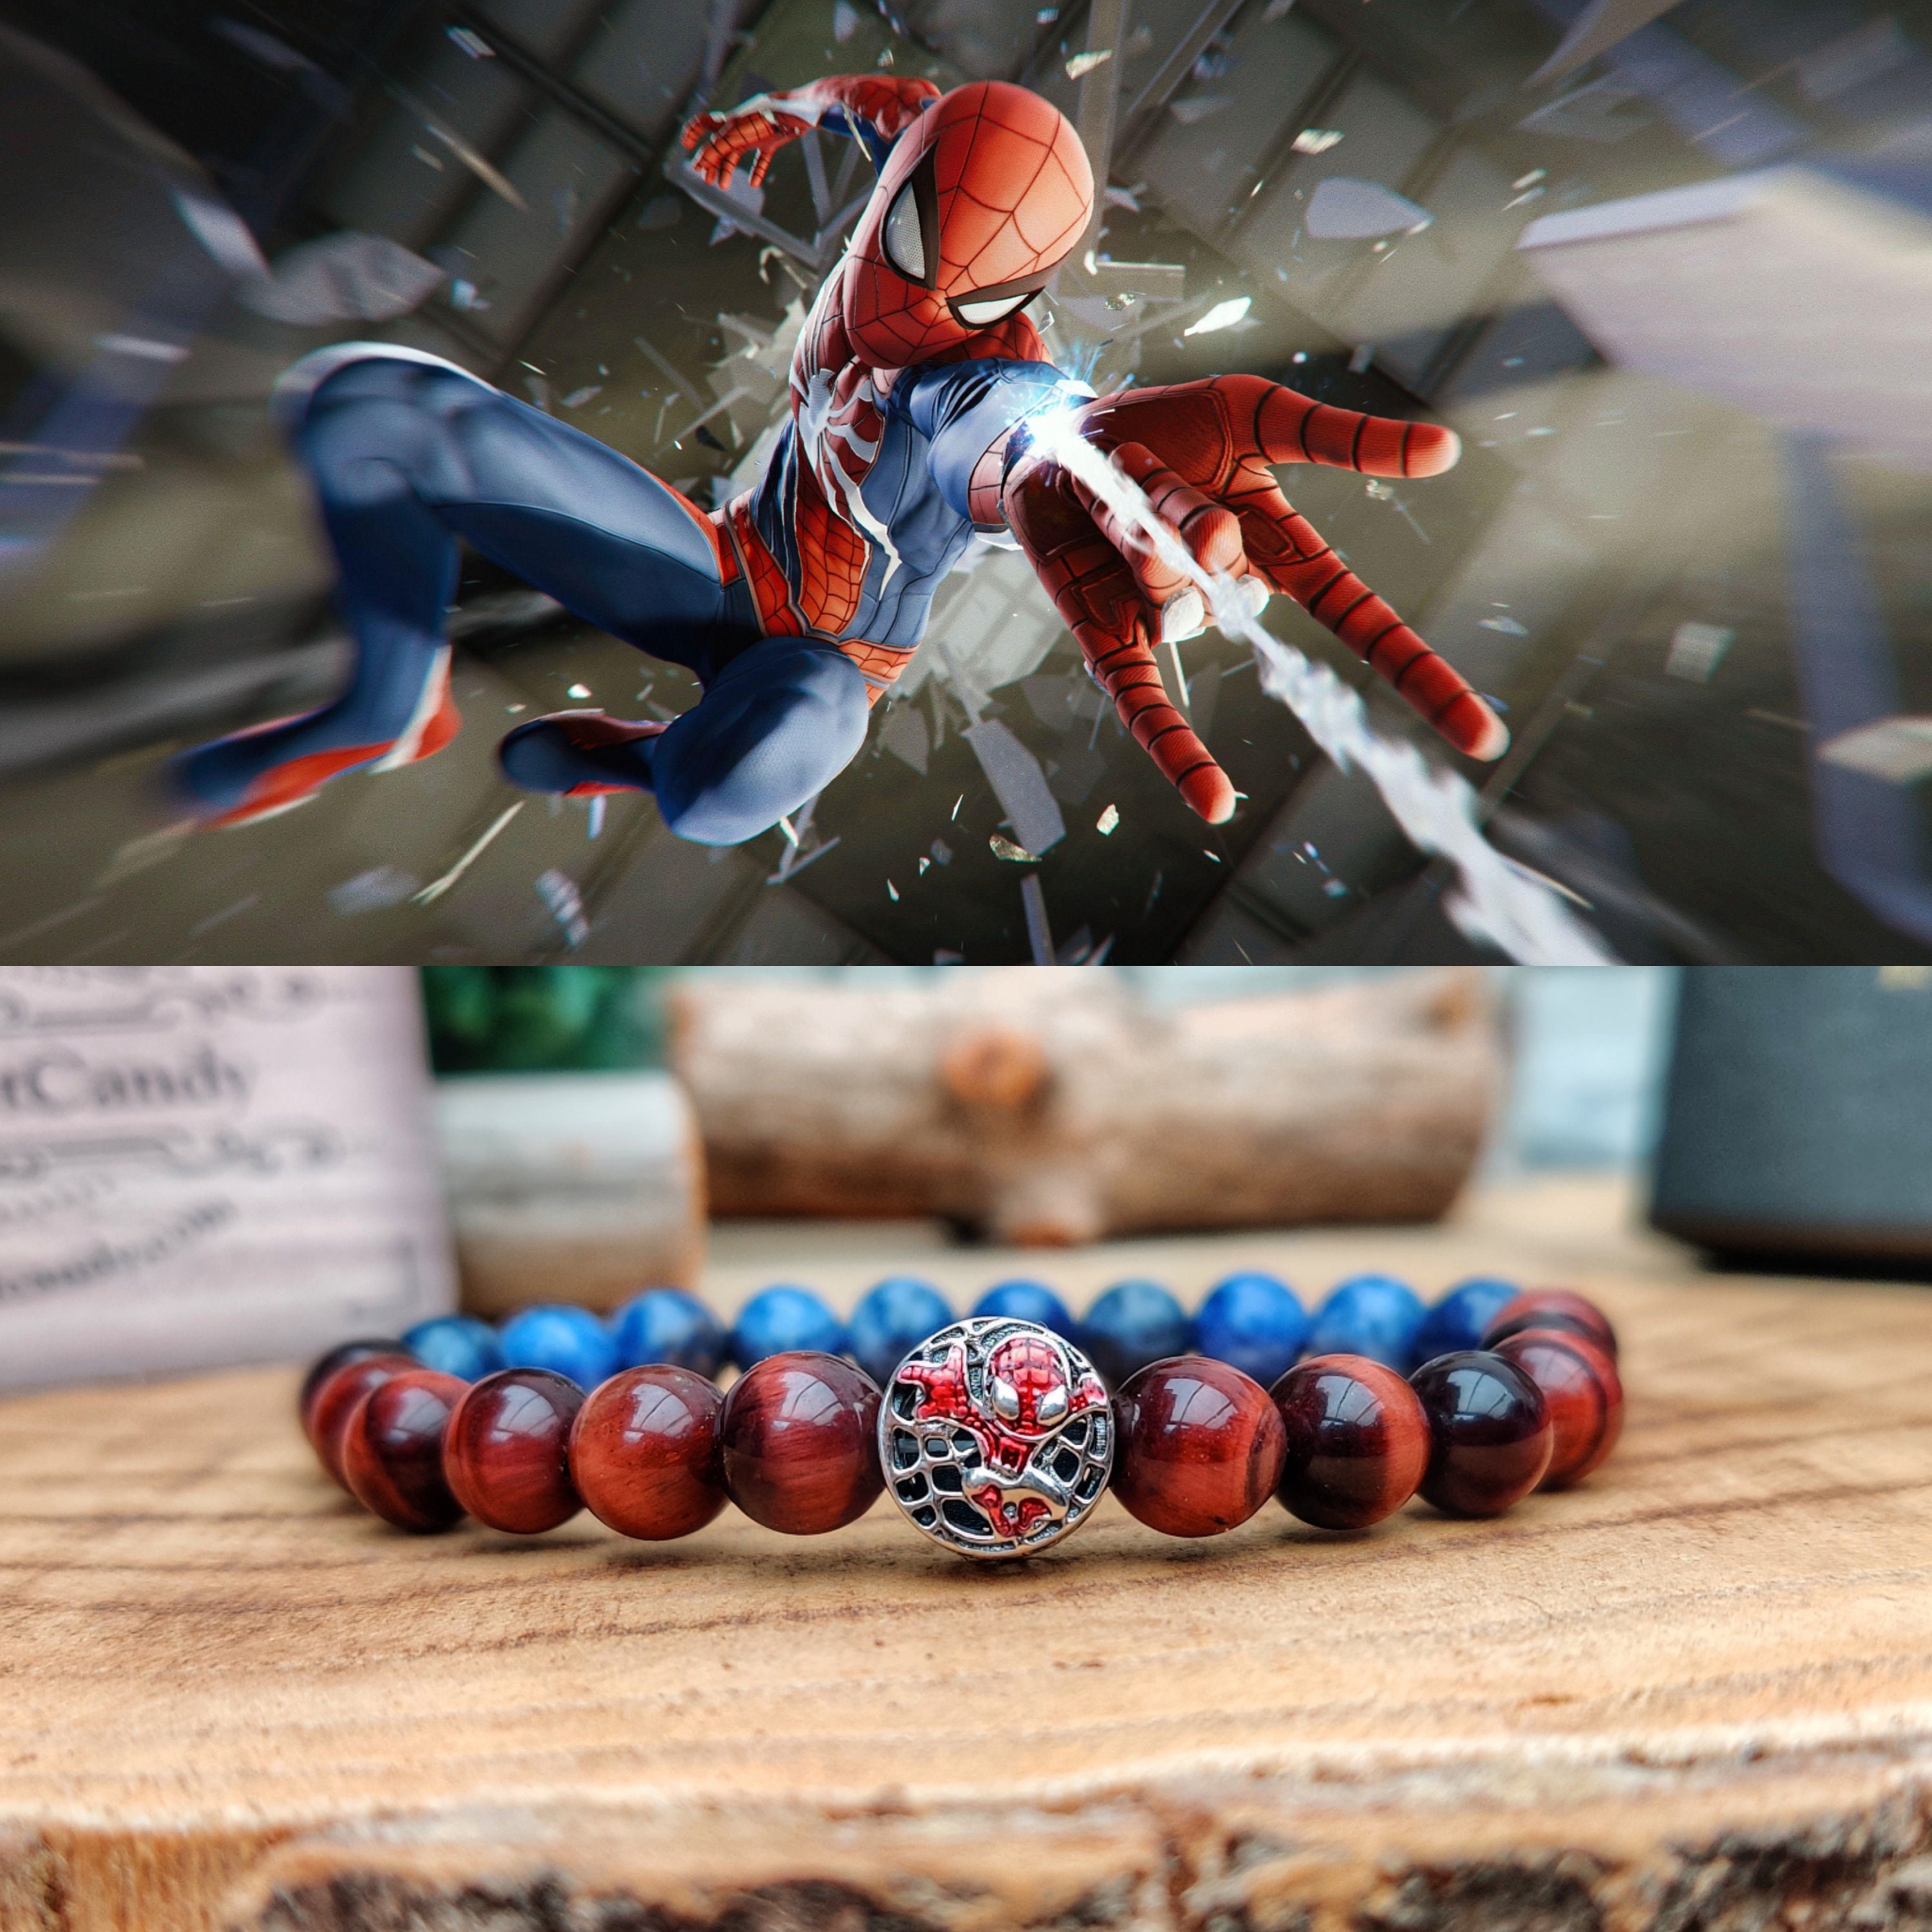 Spiderman beaded bracelet